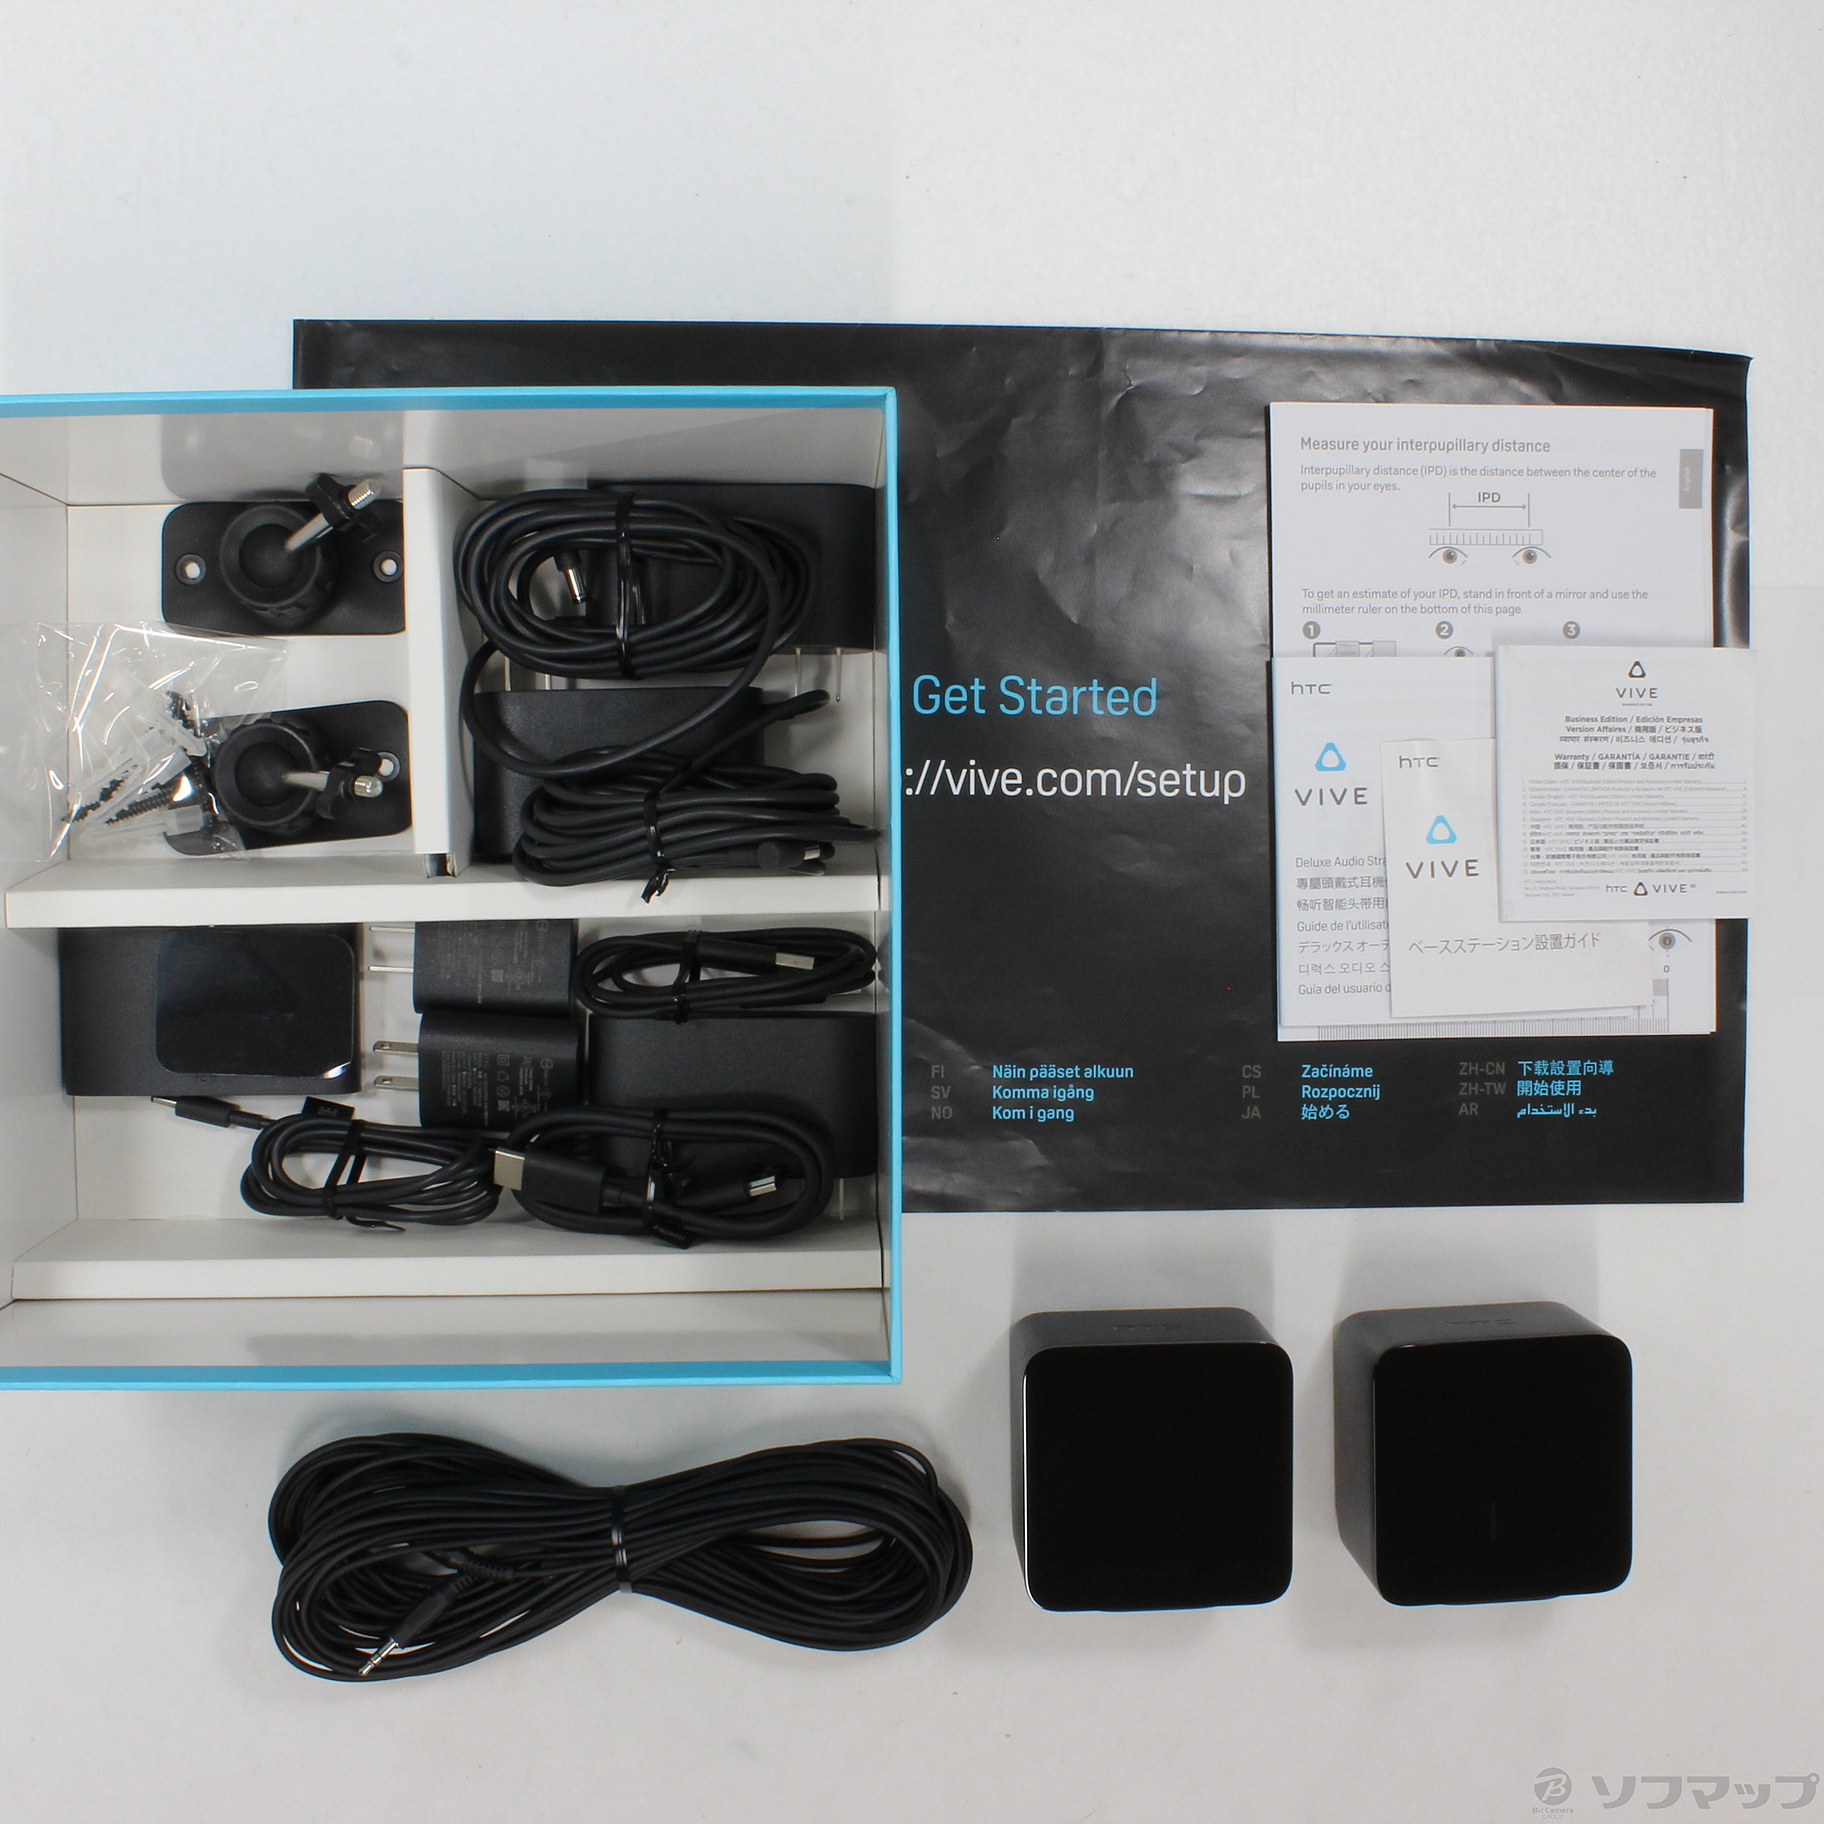 HTC VIVE VRヘッドマウントディスプレイ HAHZ